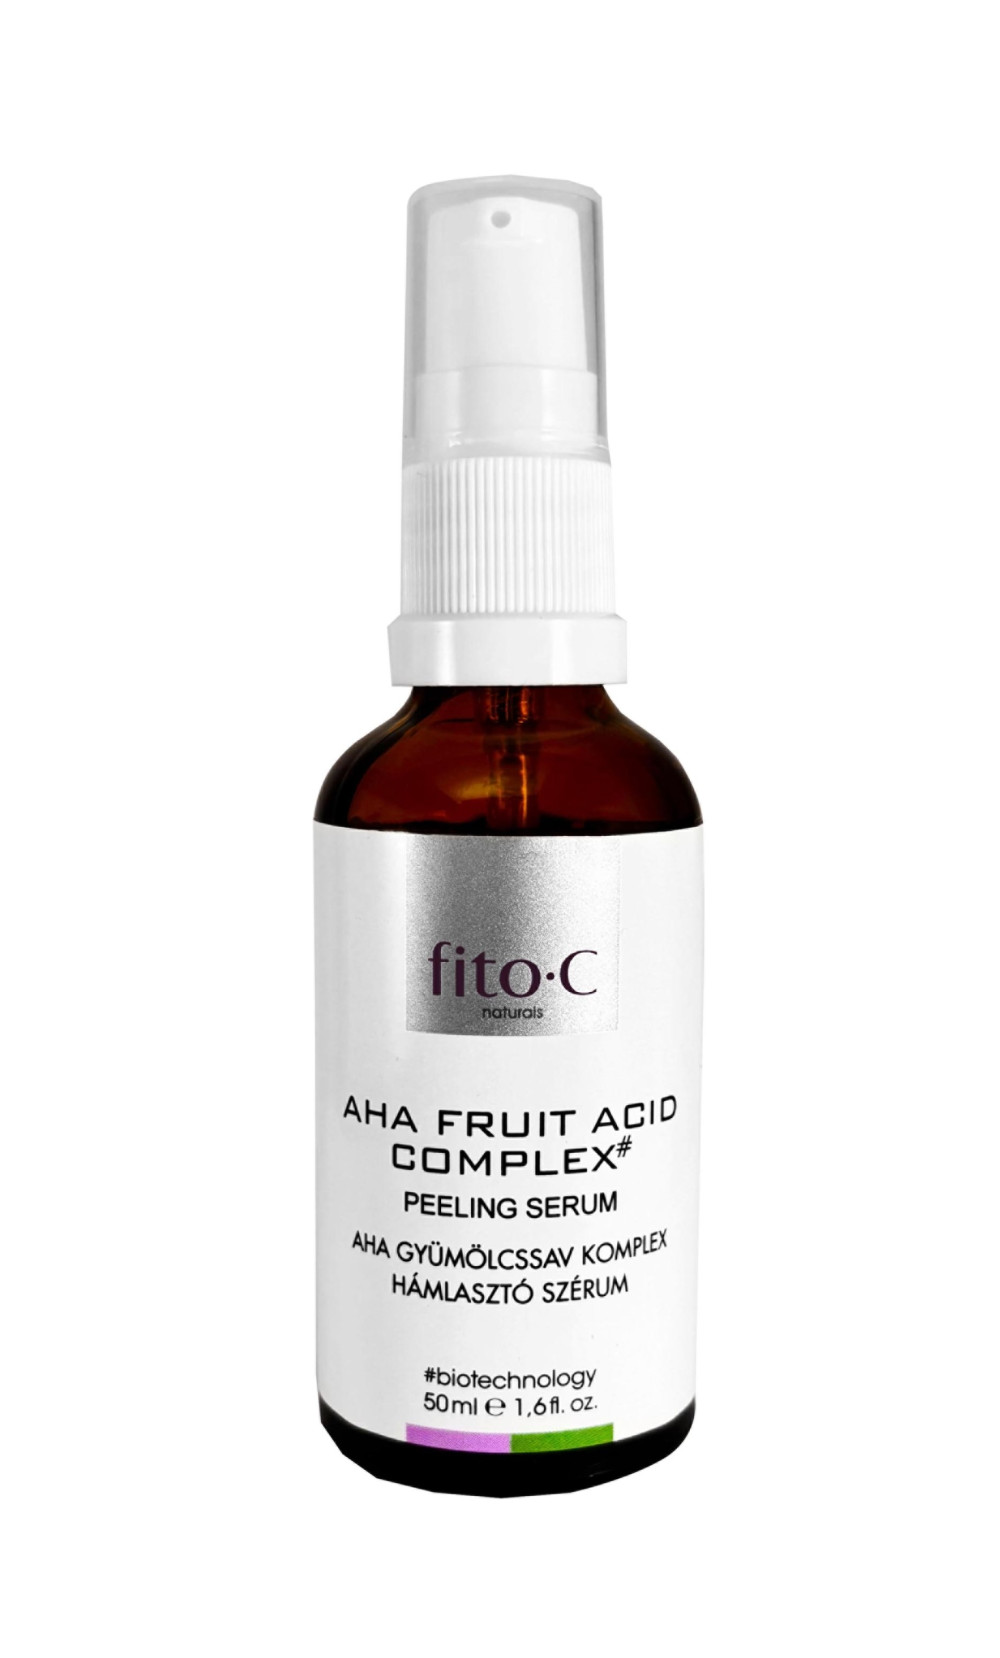 fito.C - AHA Fruit Acids Complex Serum - AHA Gyümölcssav Komplex Szérum, 50ml 